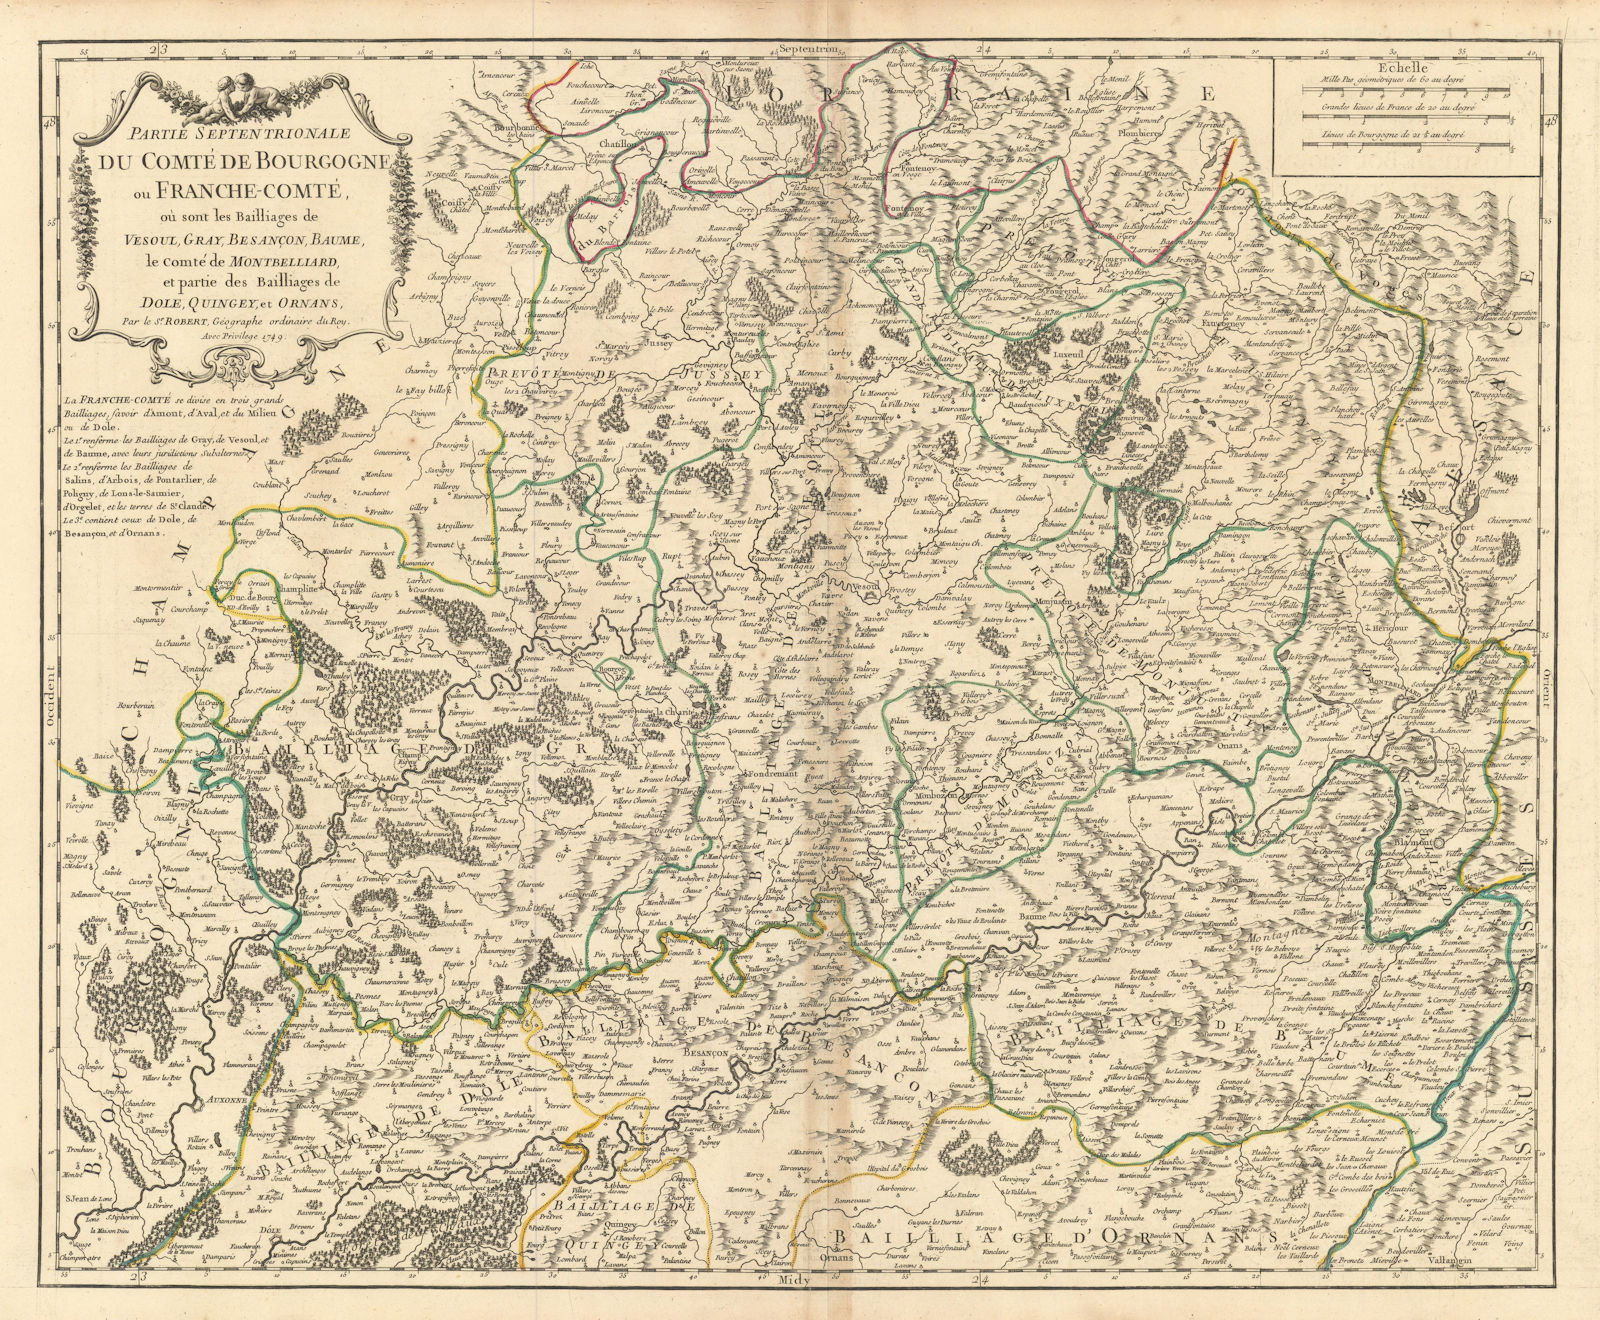 Partie Septentrionale… de Bourgogne ou Franche-Comté Hte Saône VAUGONDY 1749 map